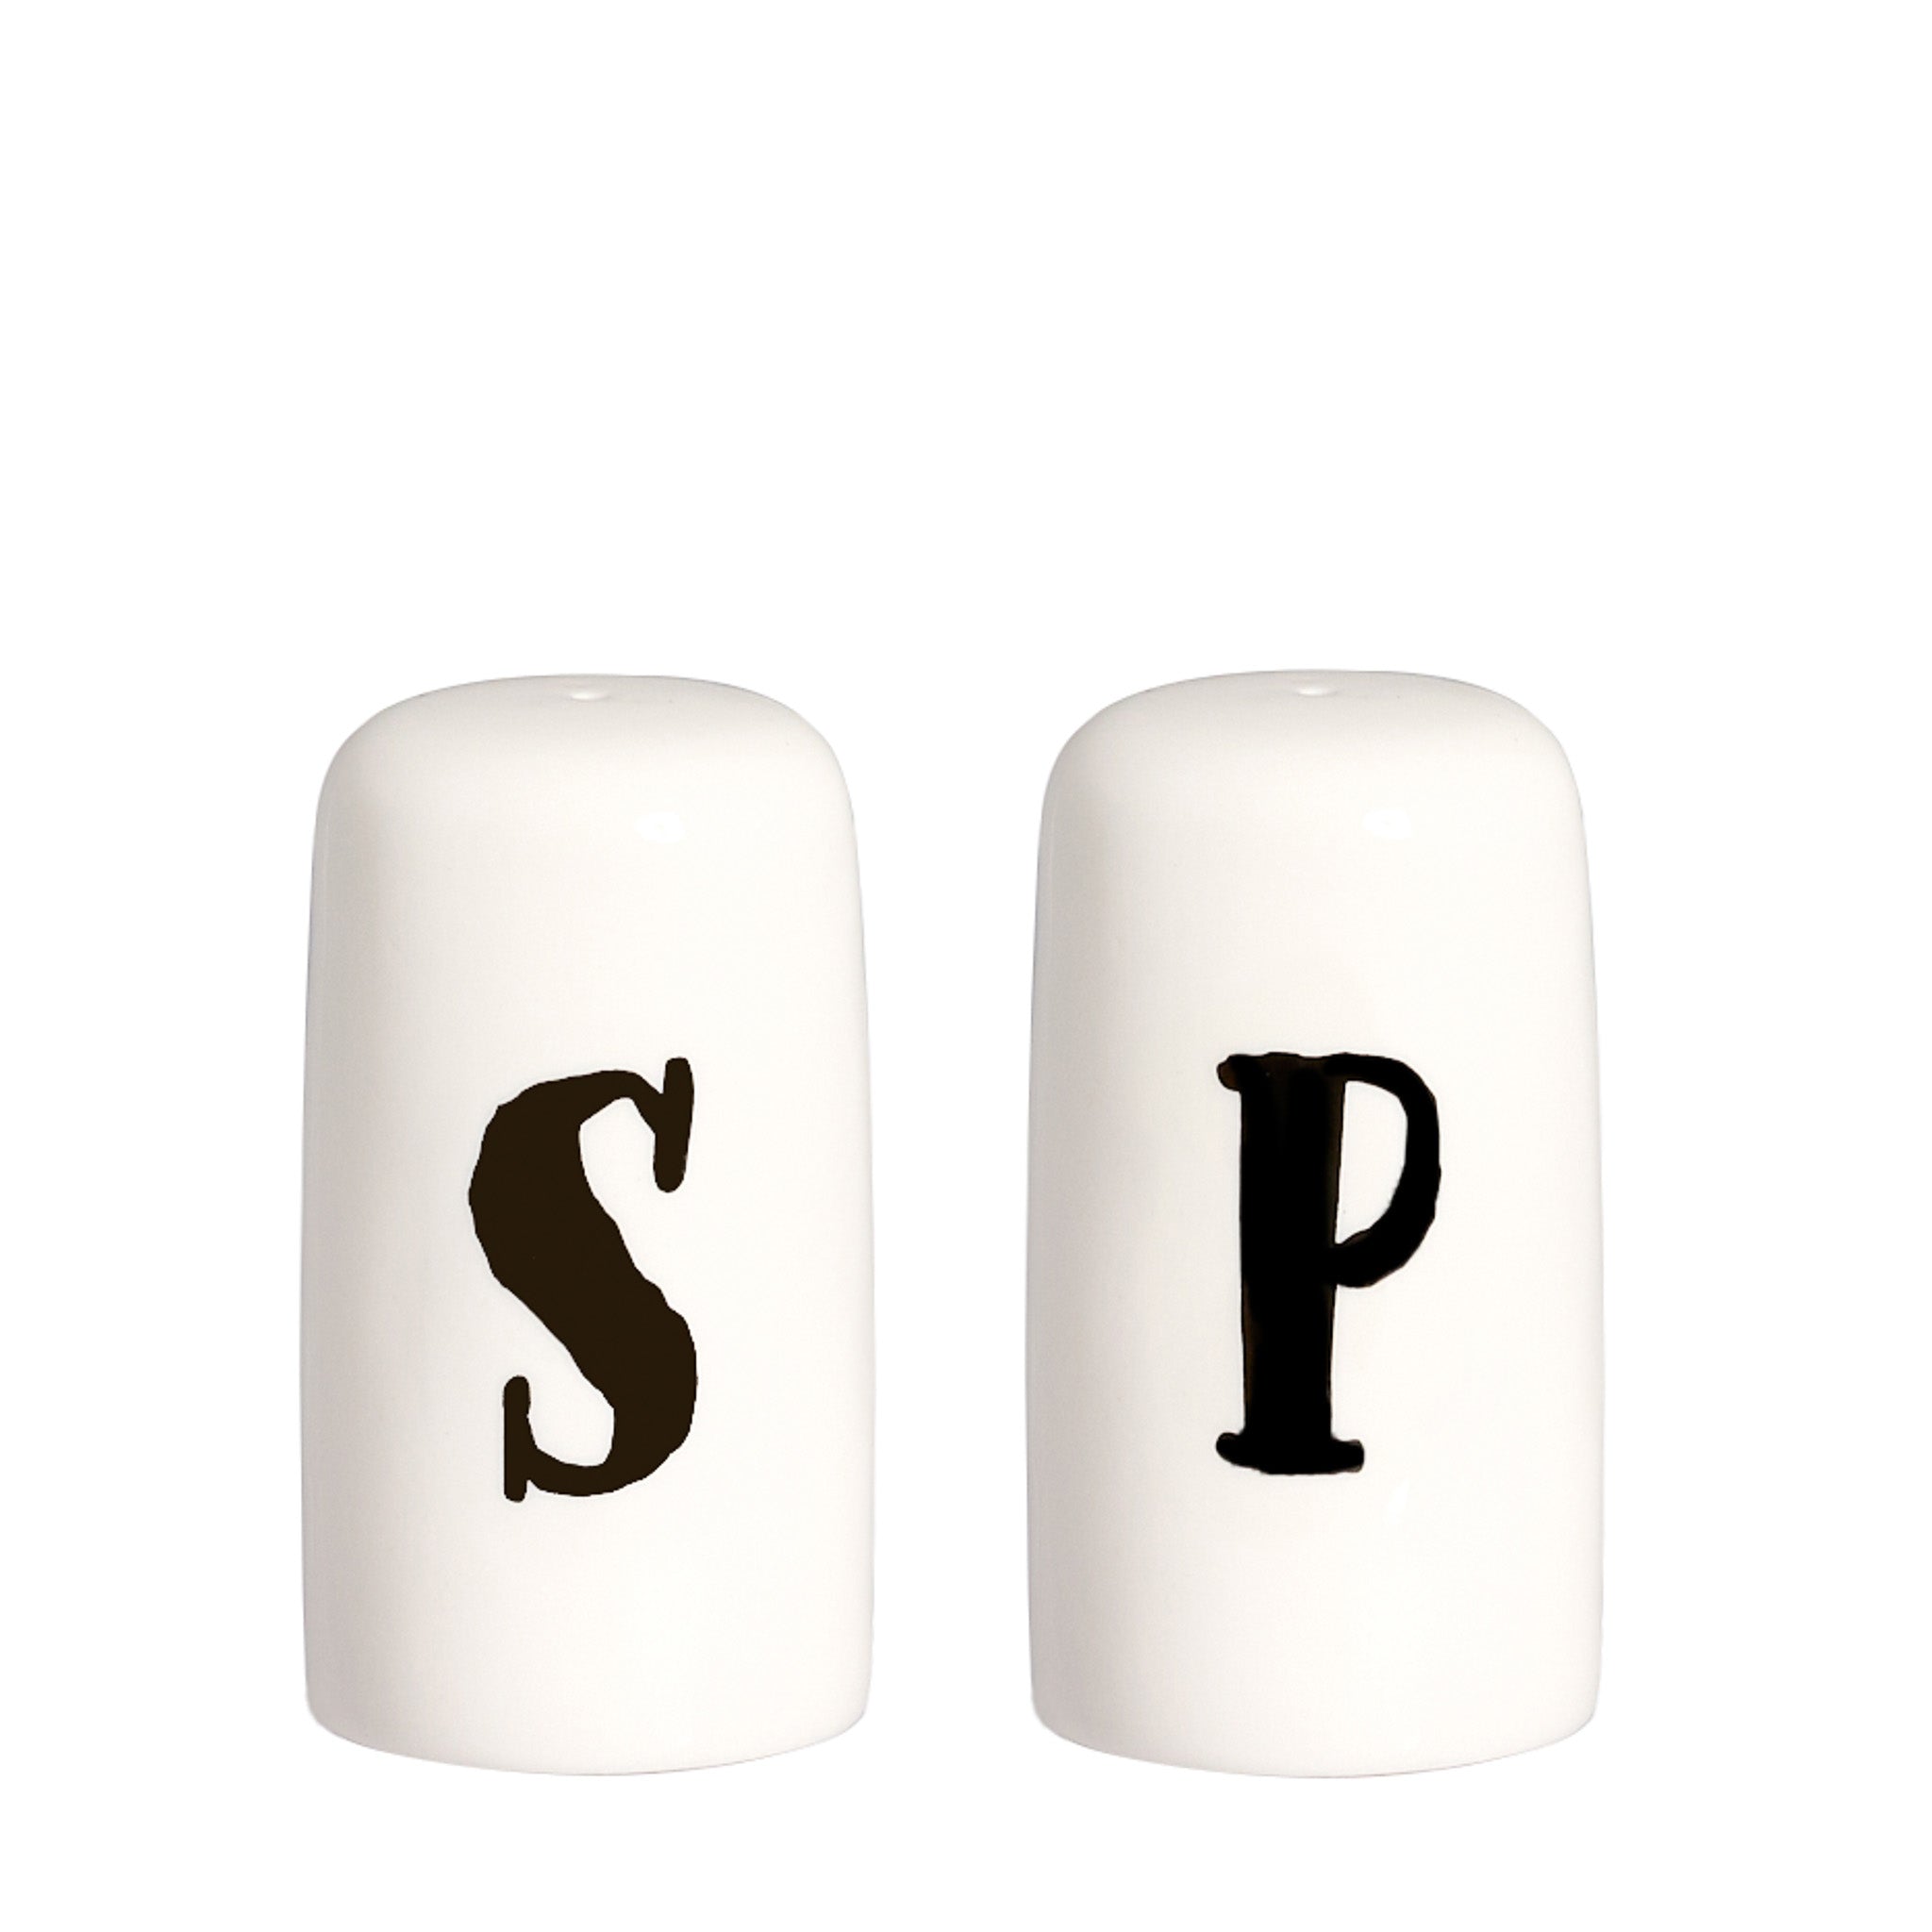 Conjunto de sal y pimienta "s" - "P"